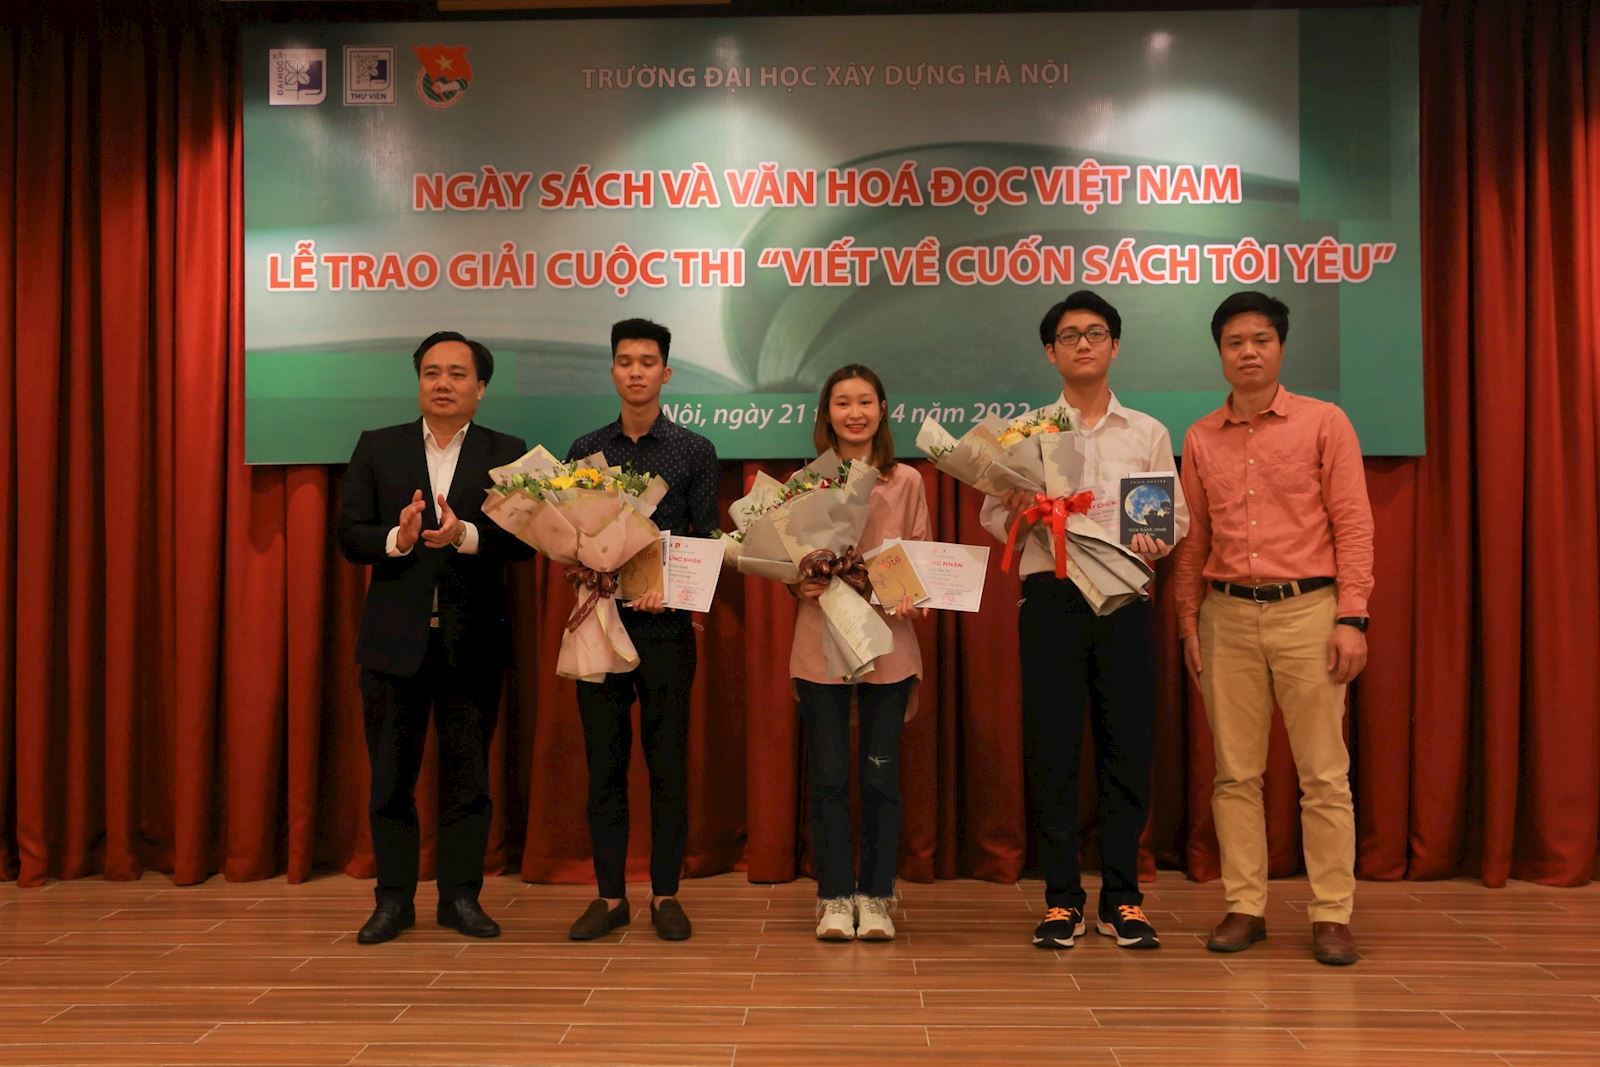 Hưởng ứng ngày Sách và Văn hóa đọc Việt Nam và trao giải cuộc thi "Viết về cuốn sách tôi yêu"